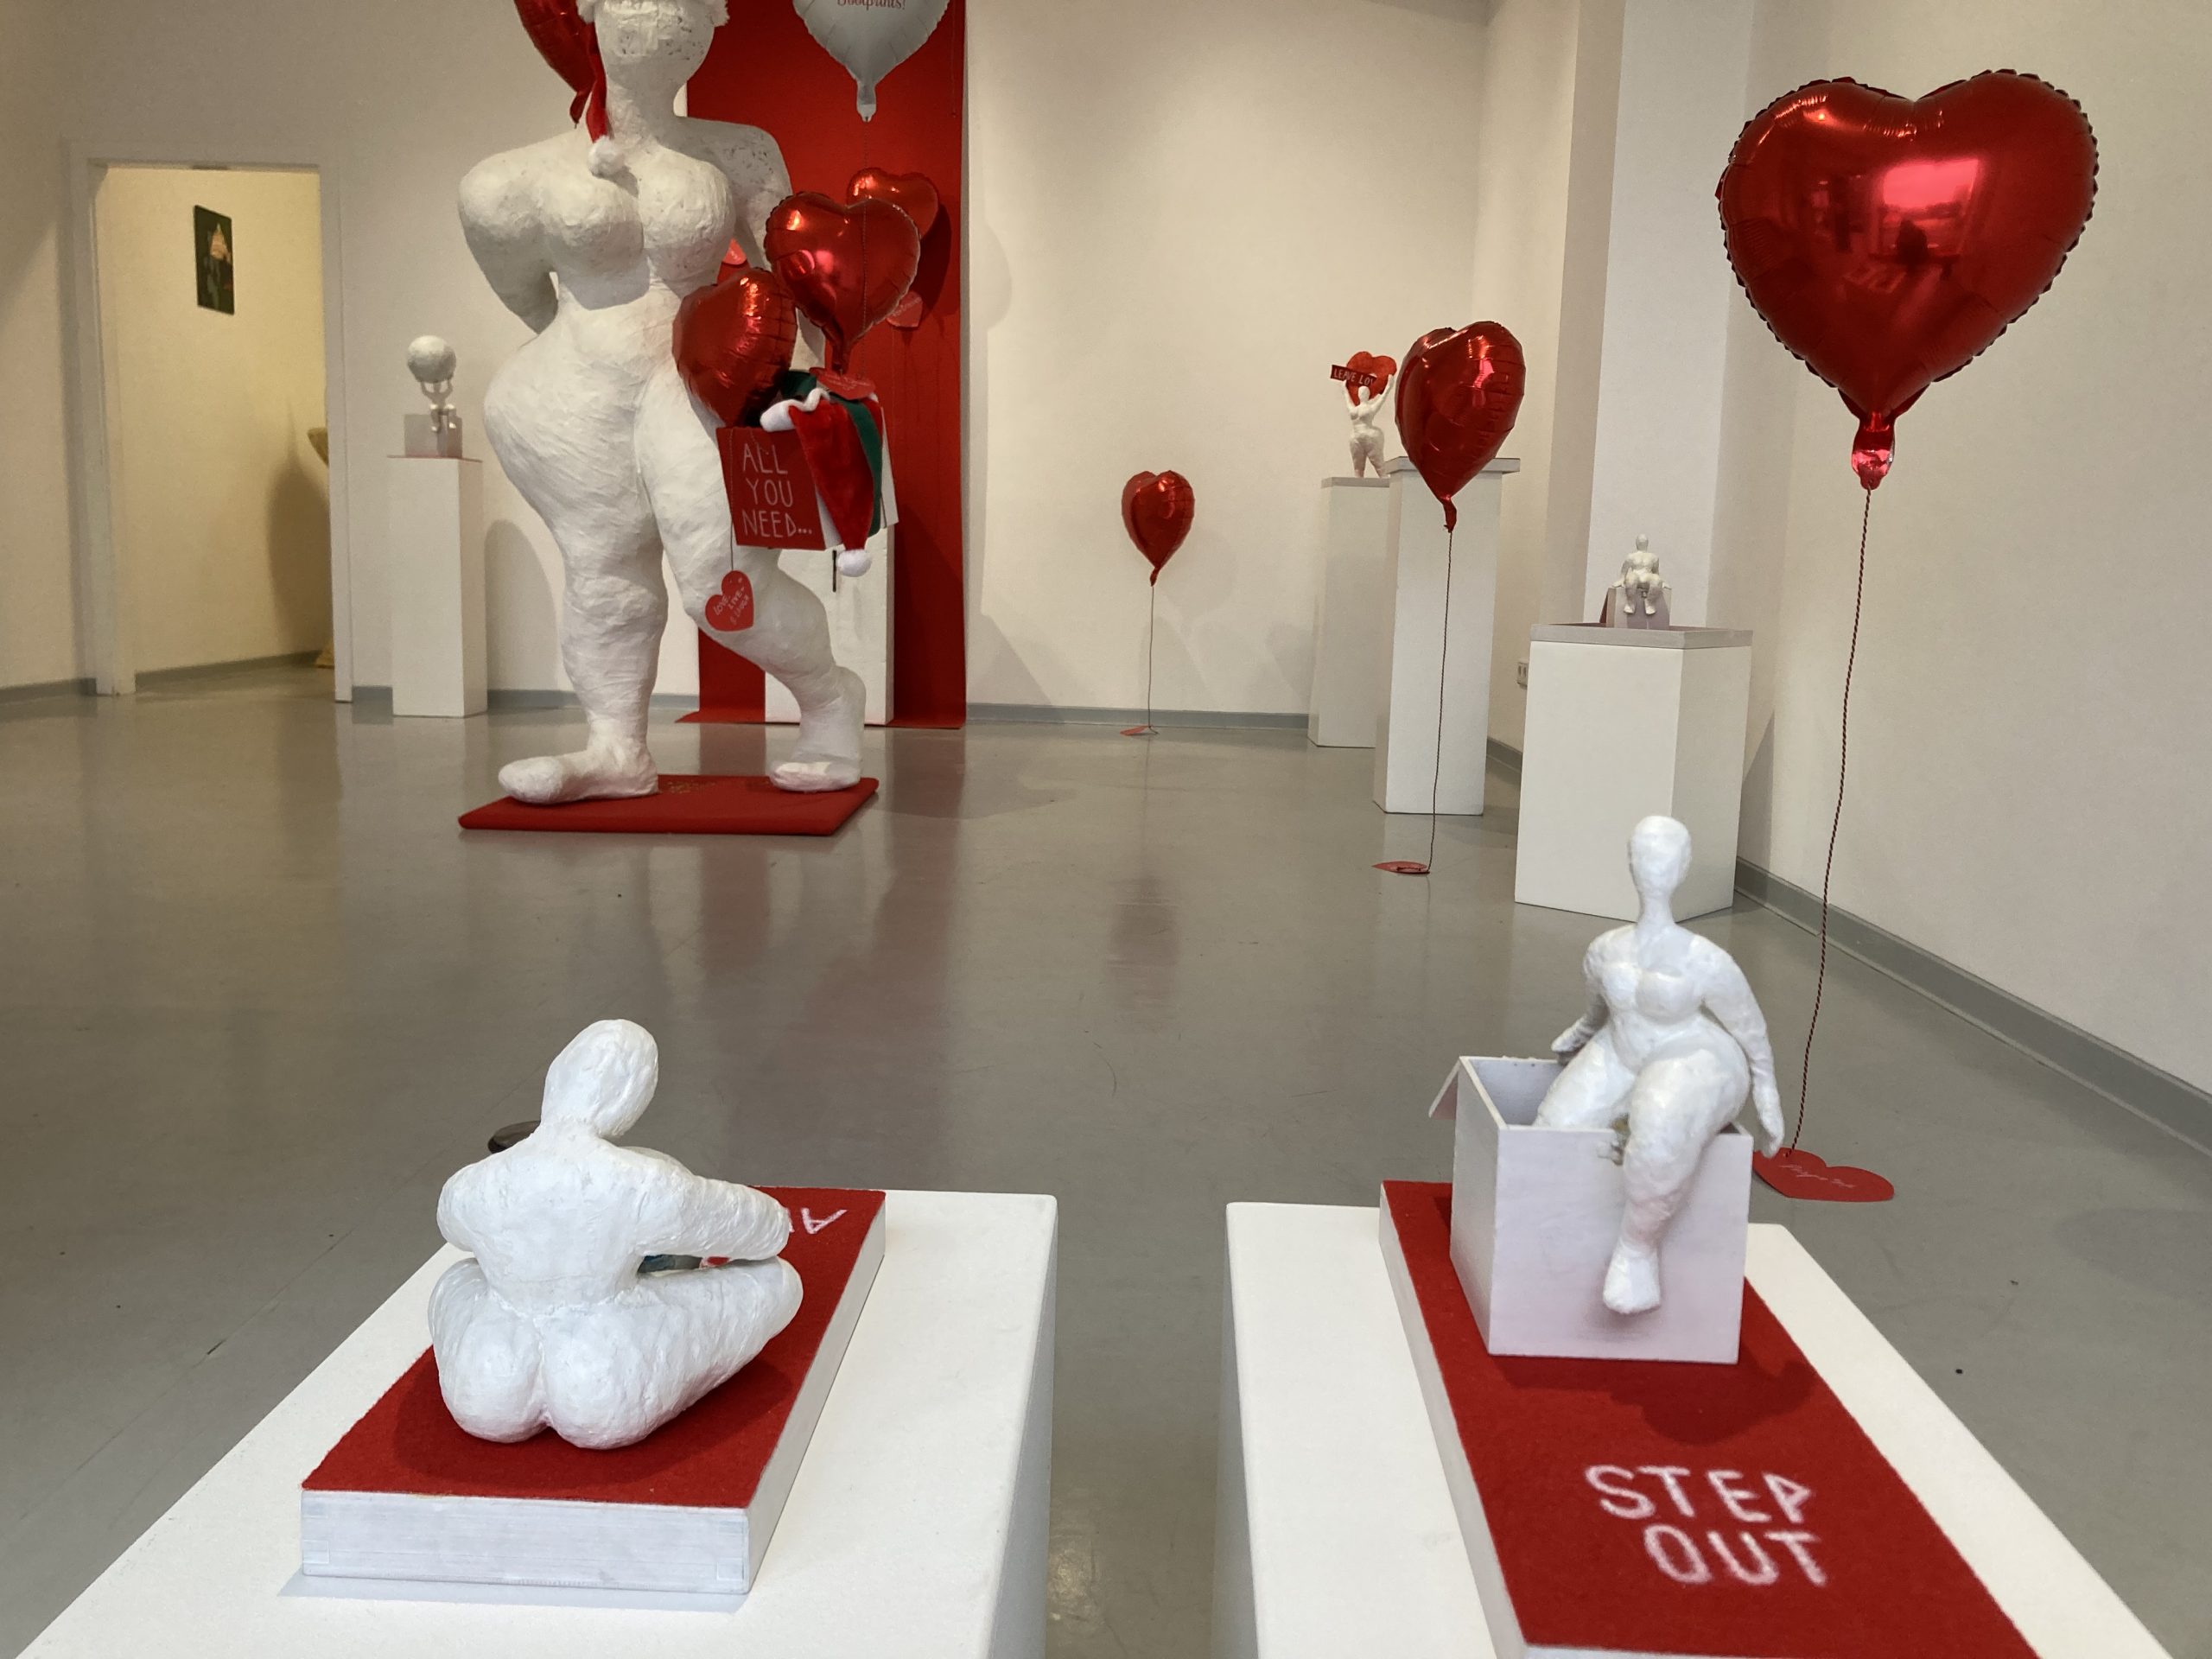 Ausstellungsraum mit mehreren Objekten und Herzluftballons dazwischen